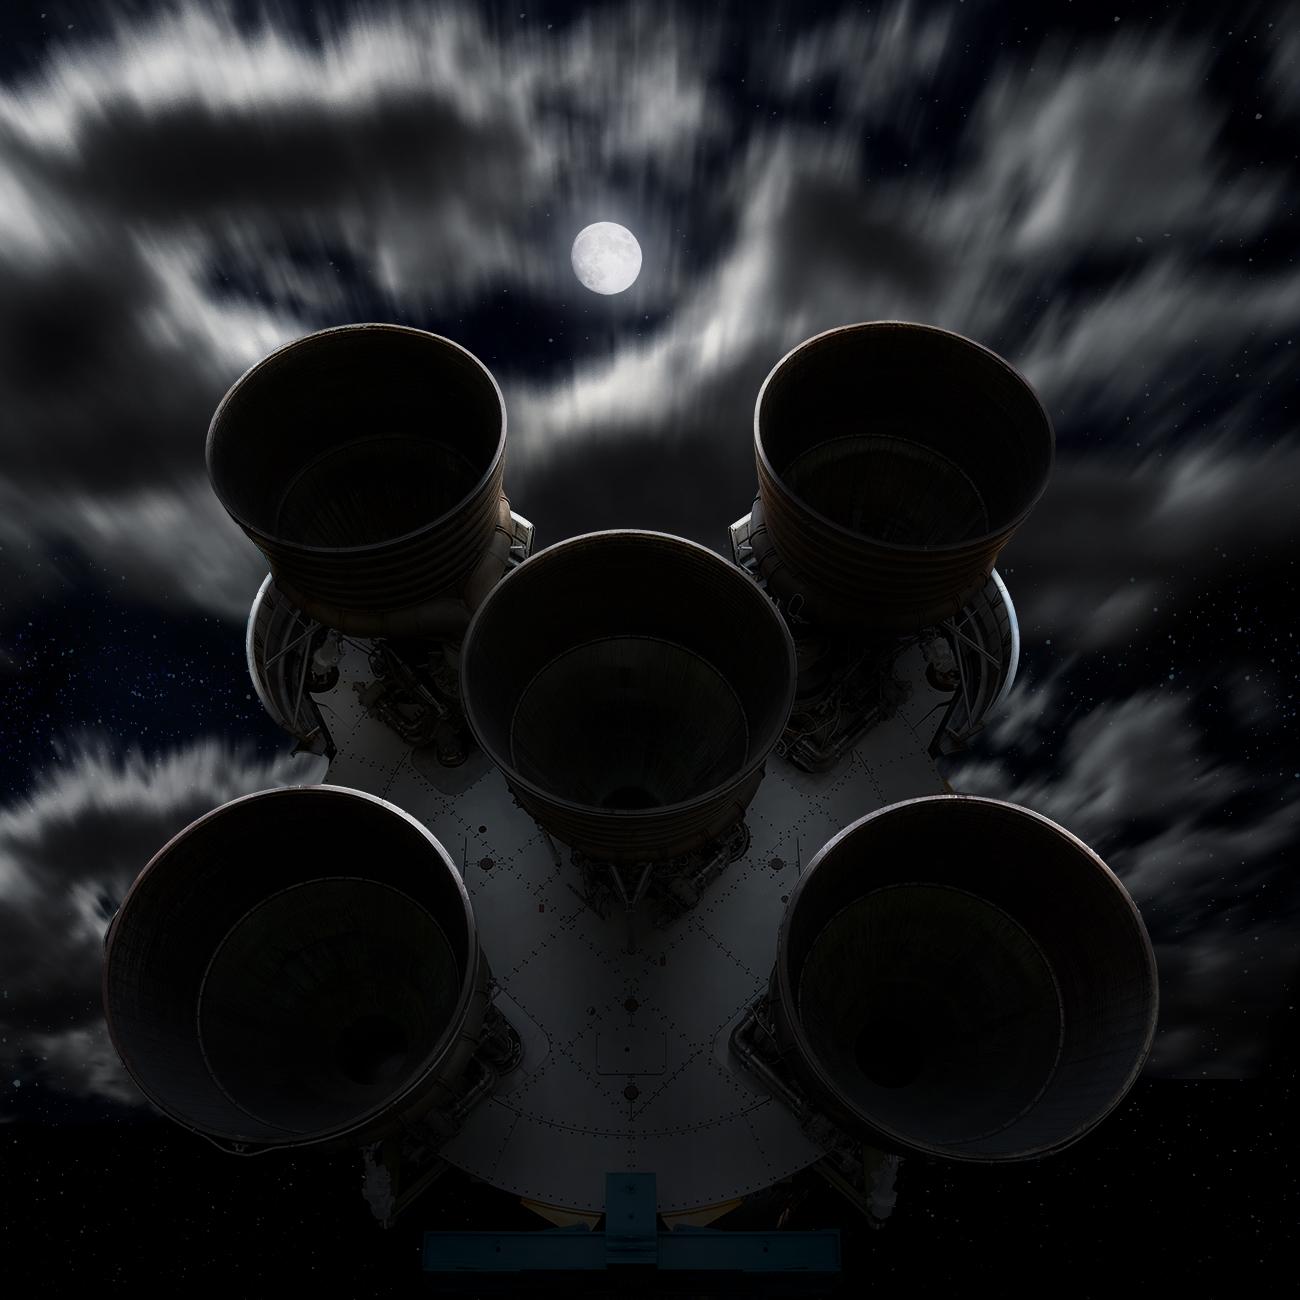 NASA Photoshoot by Blair Bunting of Saturn V Rocket